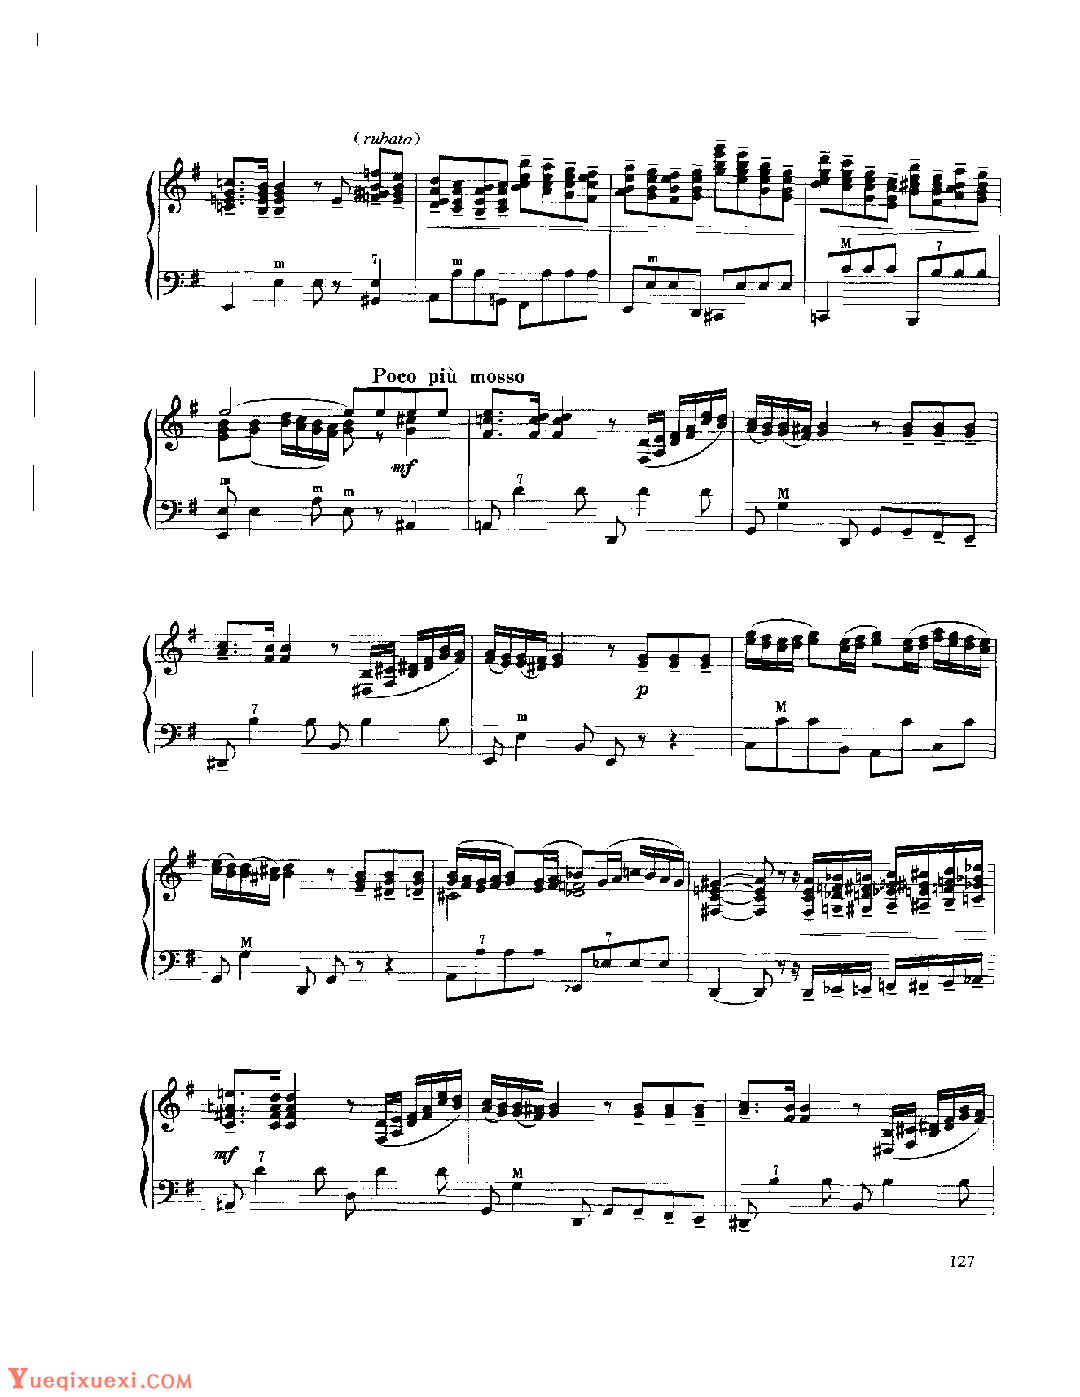 现代手风琴流行乐曲《幻想曲》[法]A.阿斯蒂尔曲